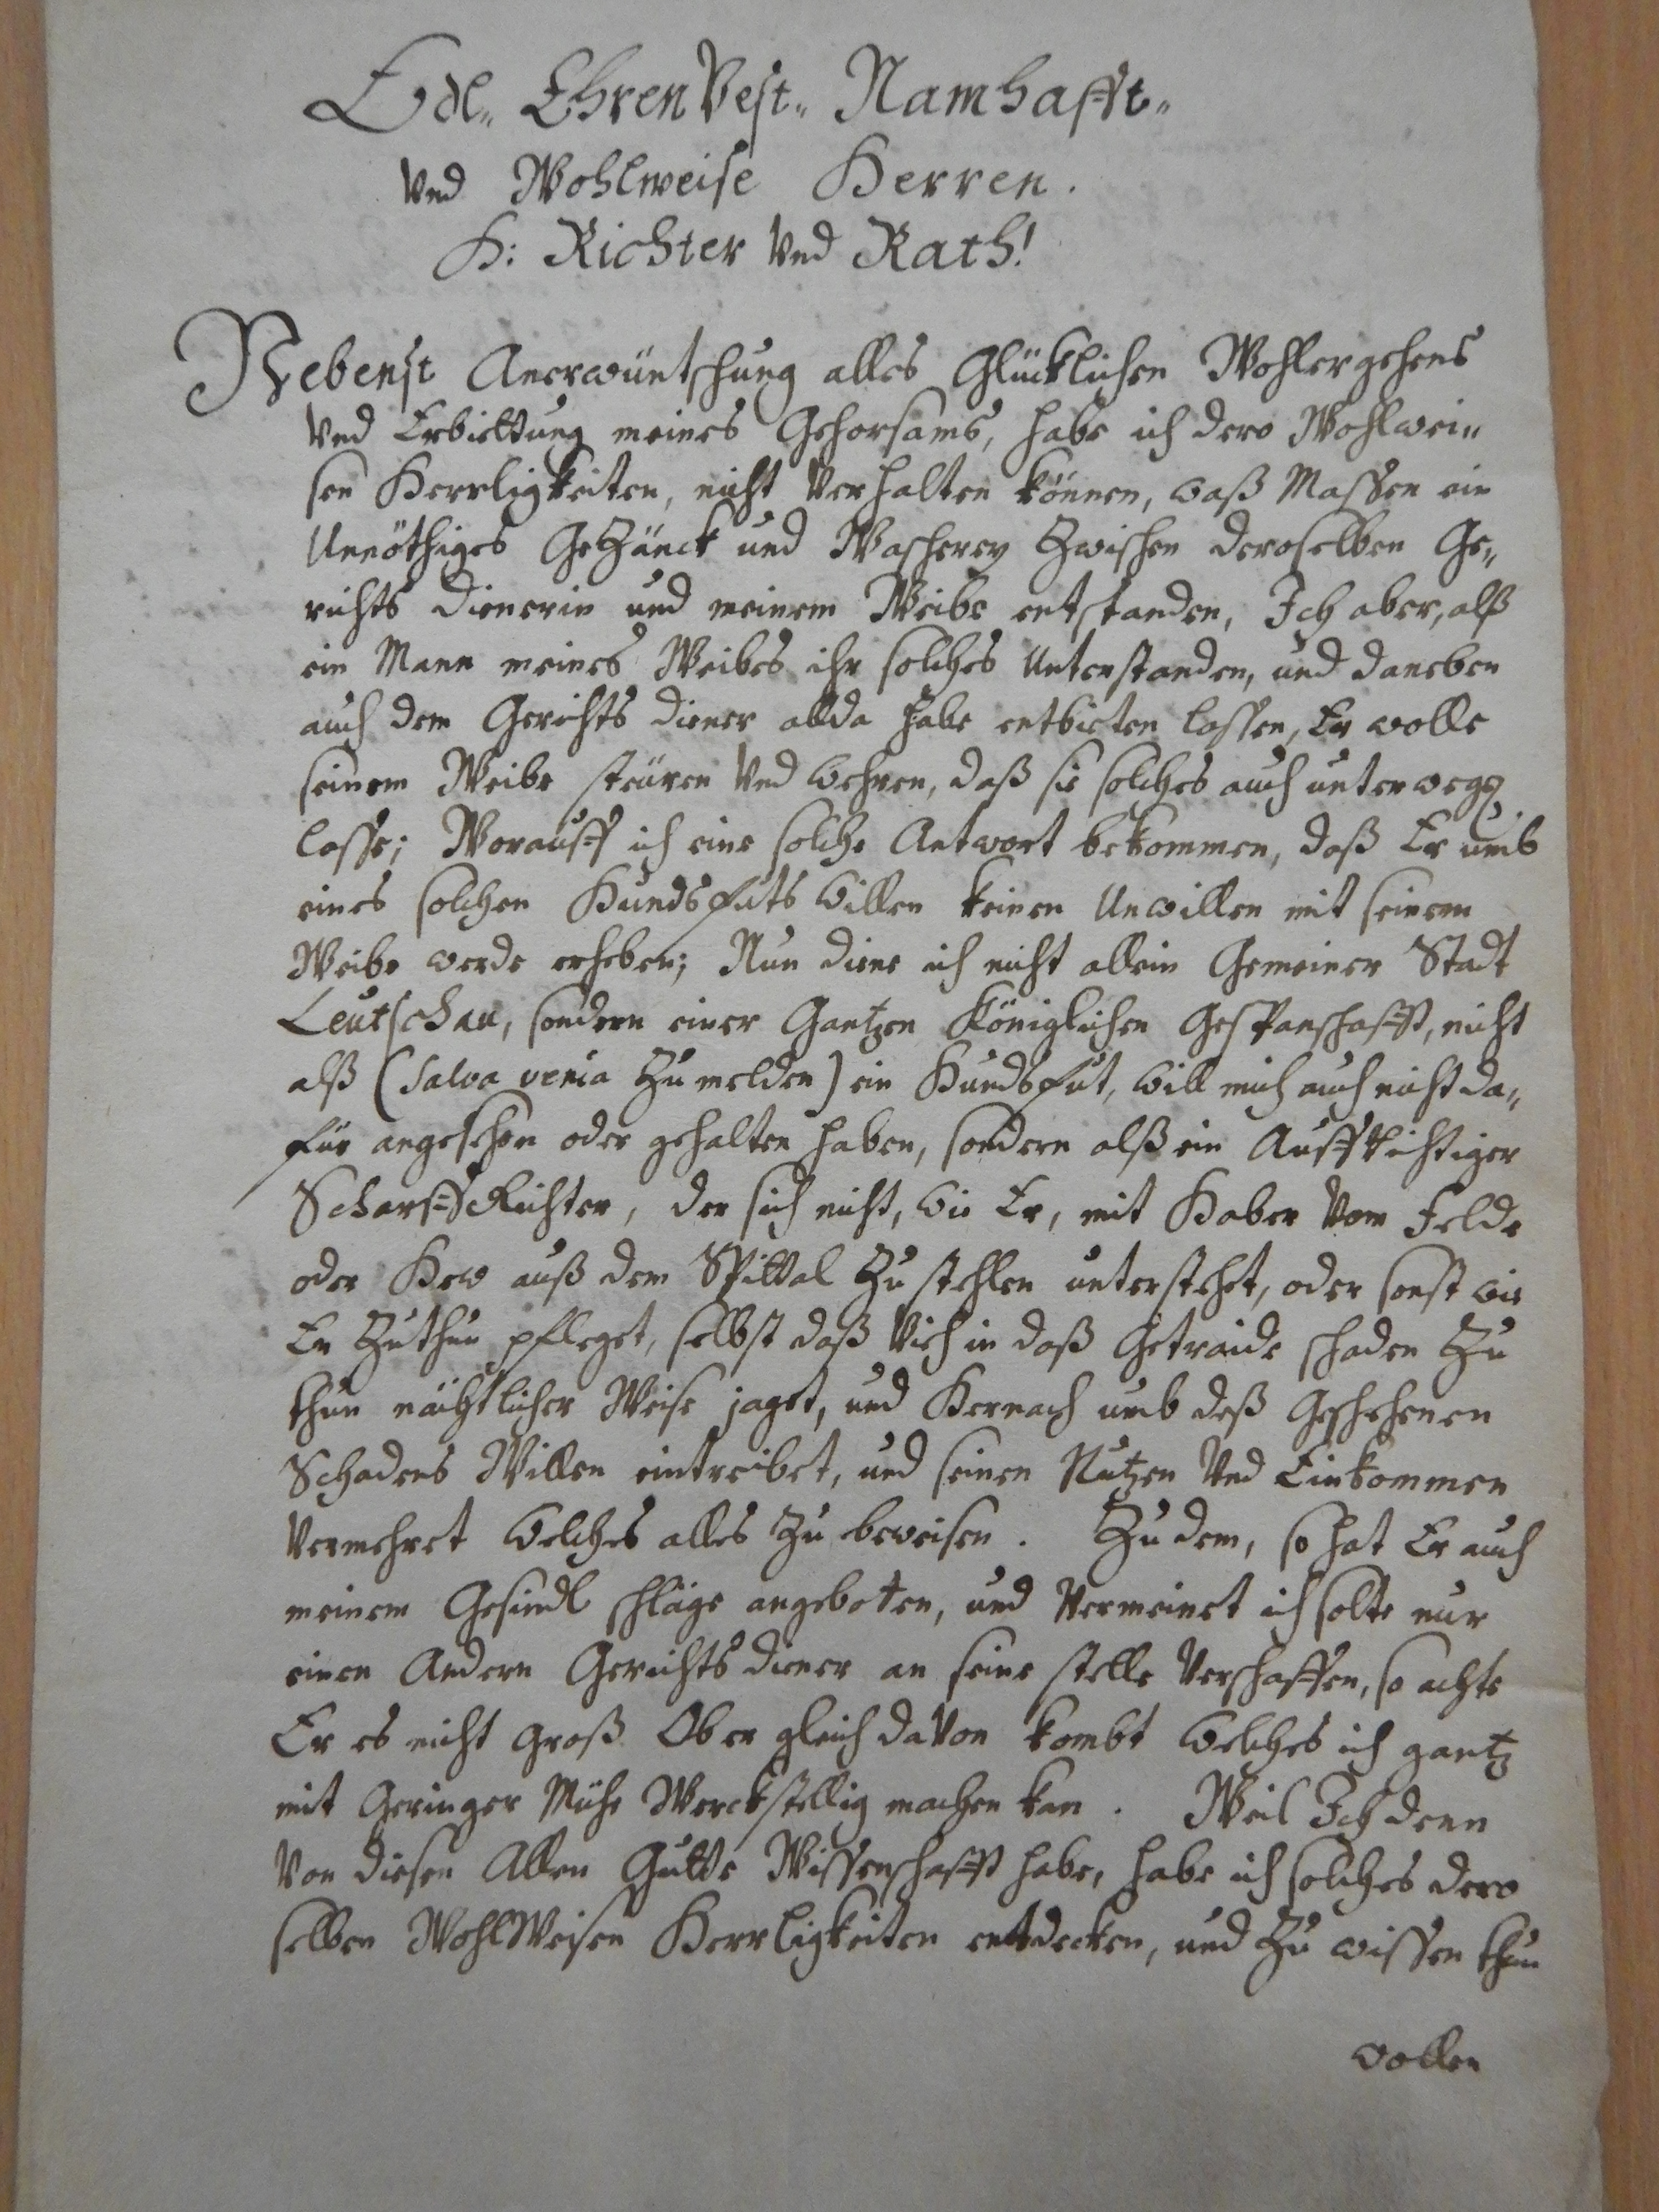 Ján Podolínsky, levočský majster kat, podal 6. novembra 1689 sťažnosť mestskej rade na manželku súdneho zriadenca, ktorá urazila jeho manželku